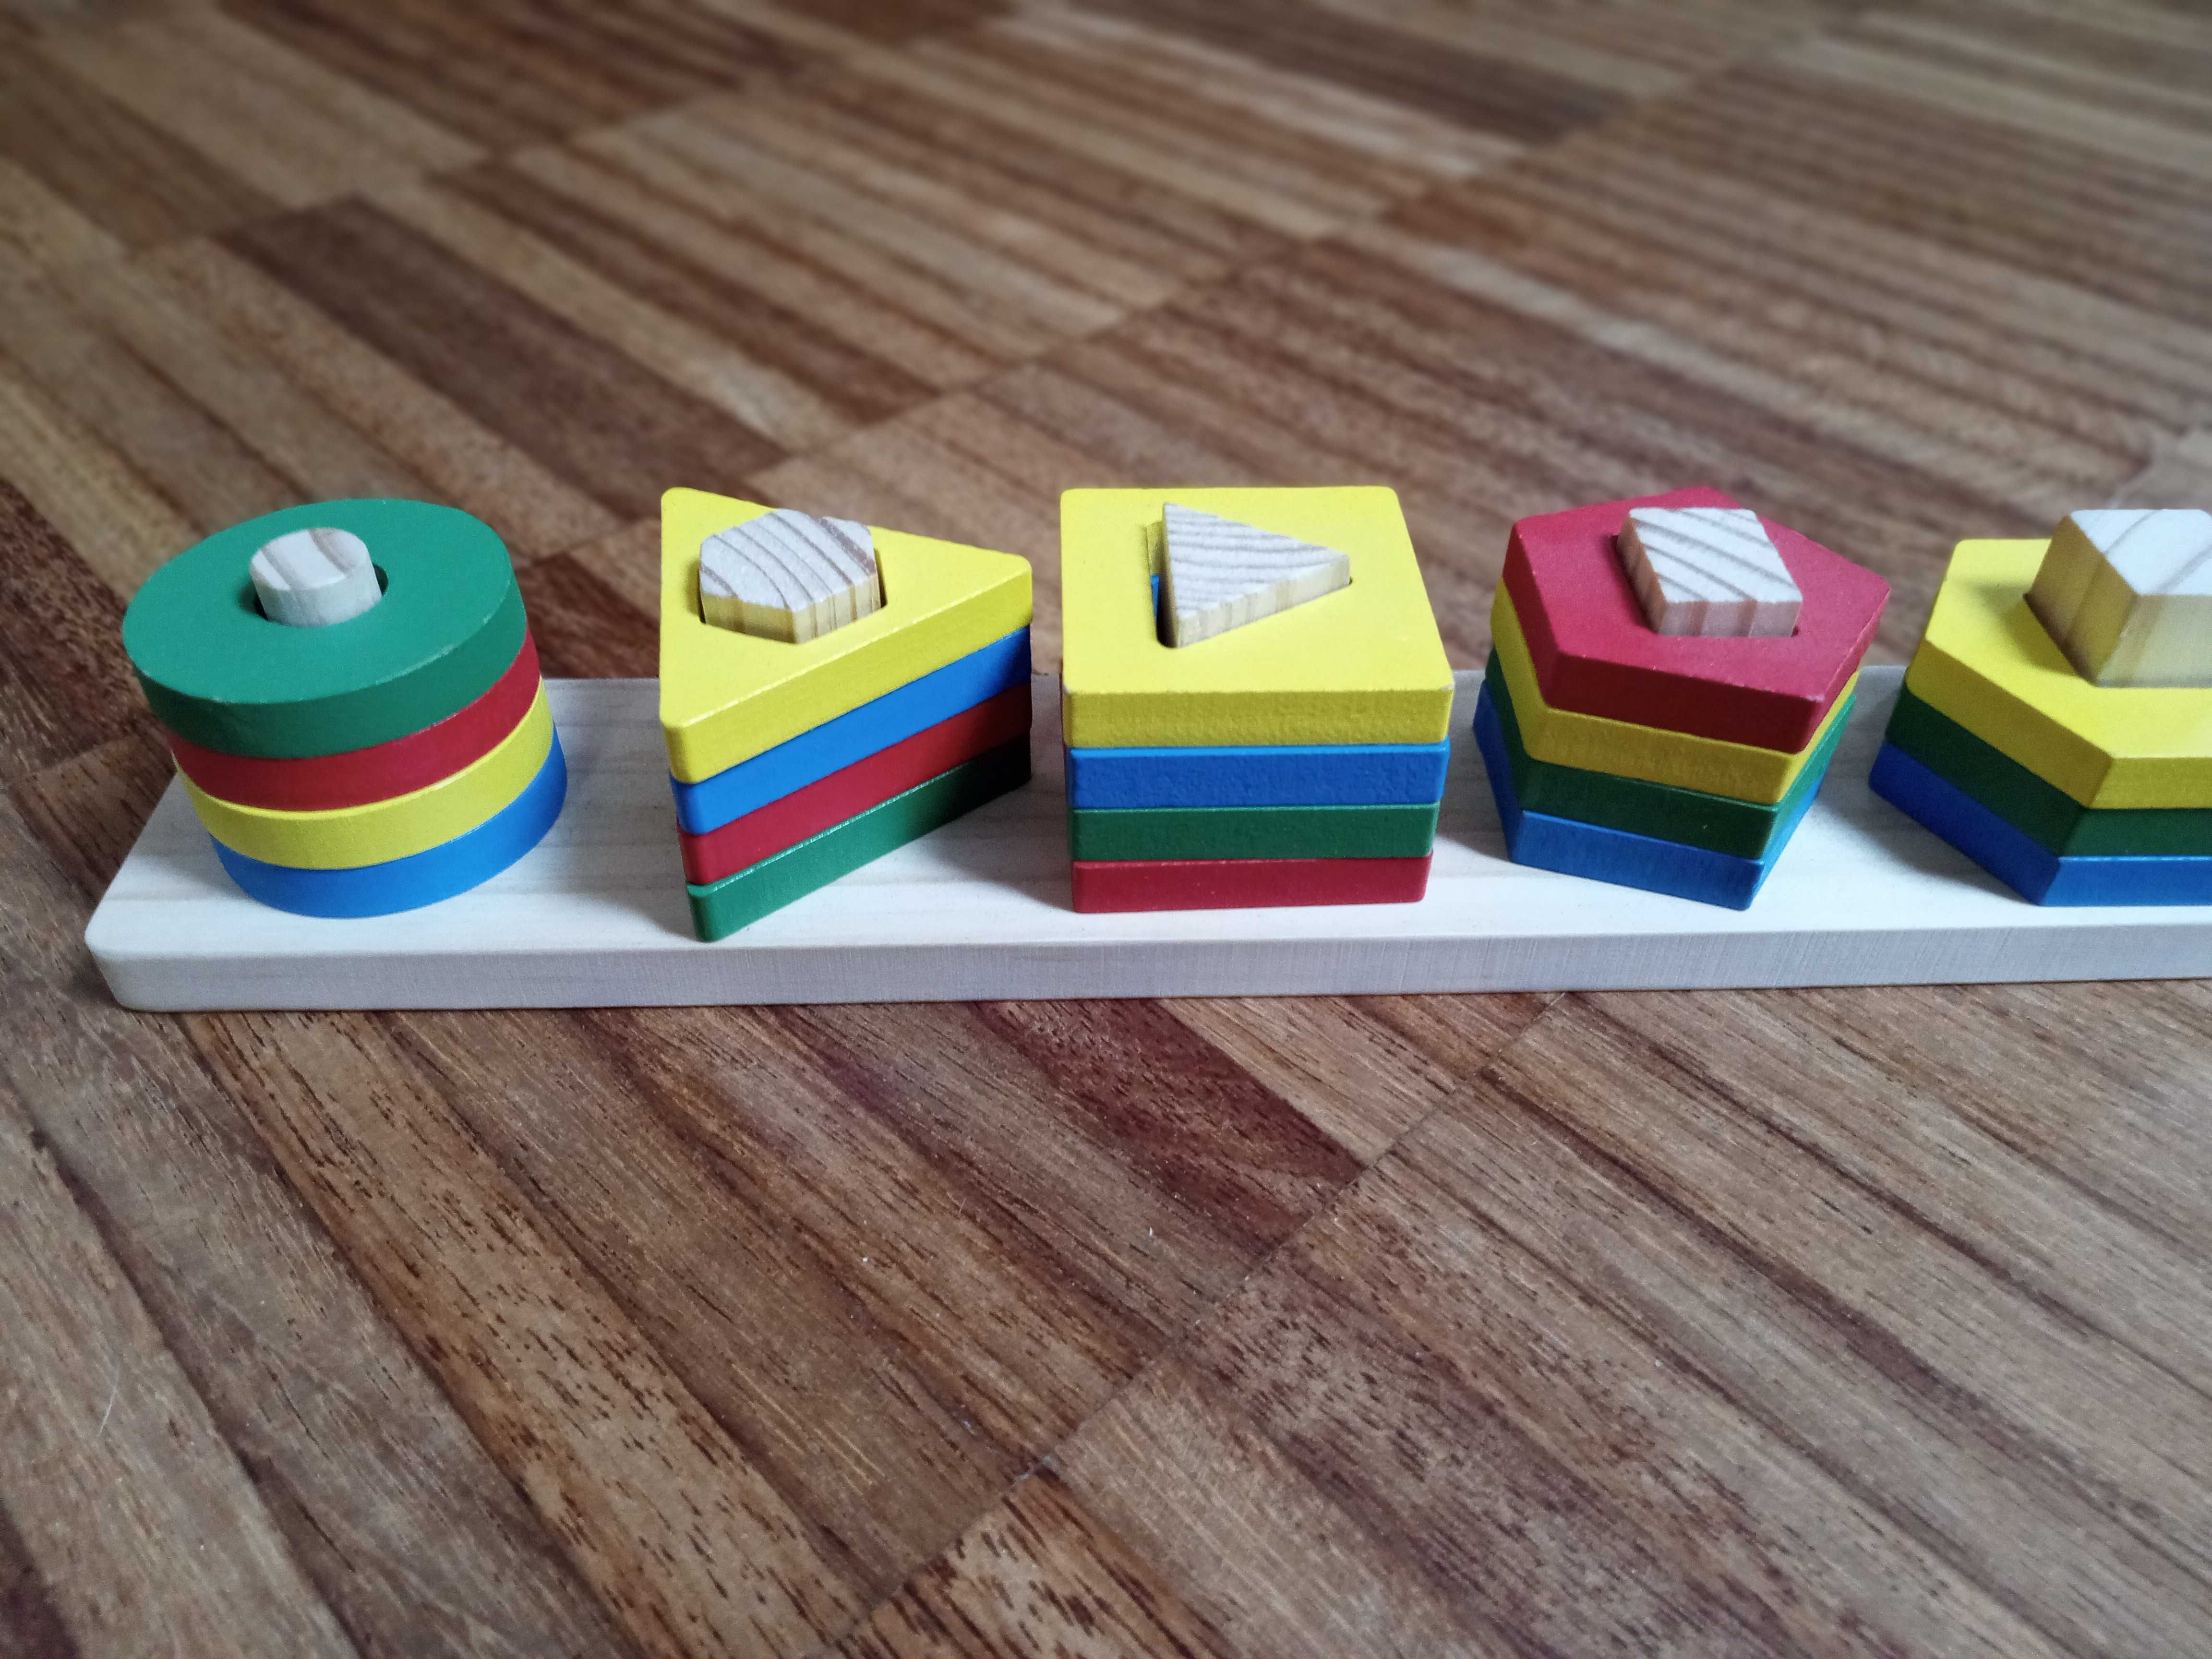 Drewniany geometryczny sorter, puzzle do sortowania kształtów